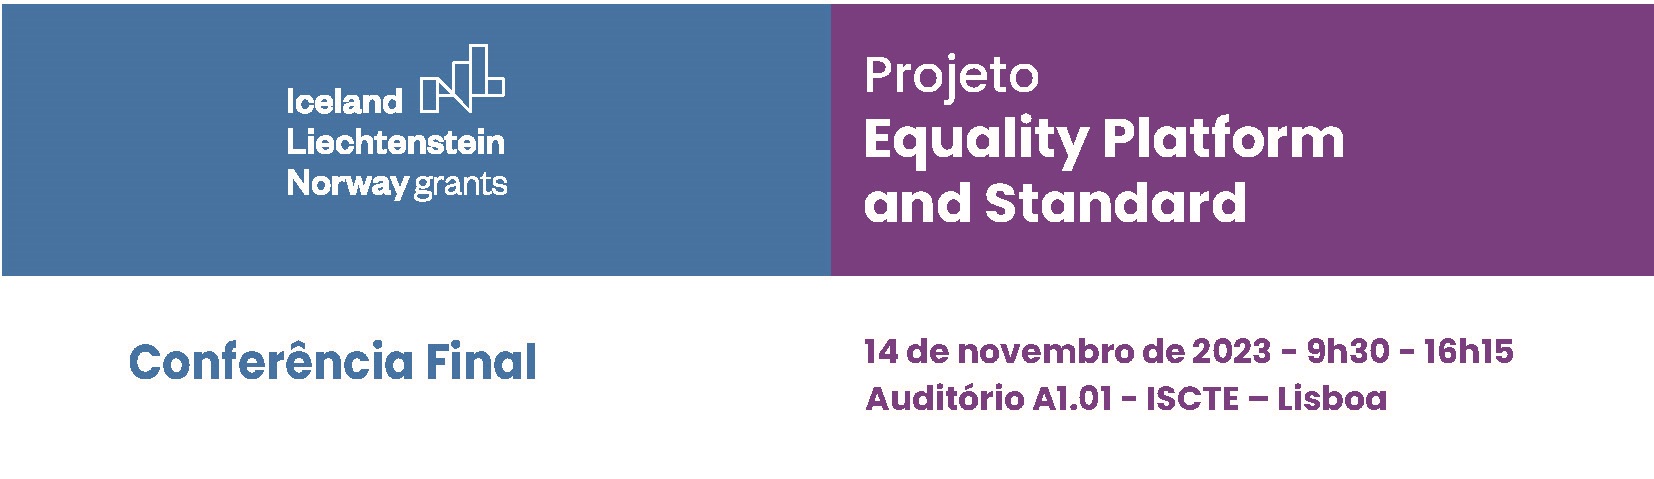 imagem Conferência final do projeto Equality Platform and Standard